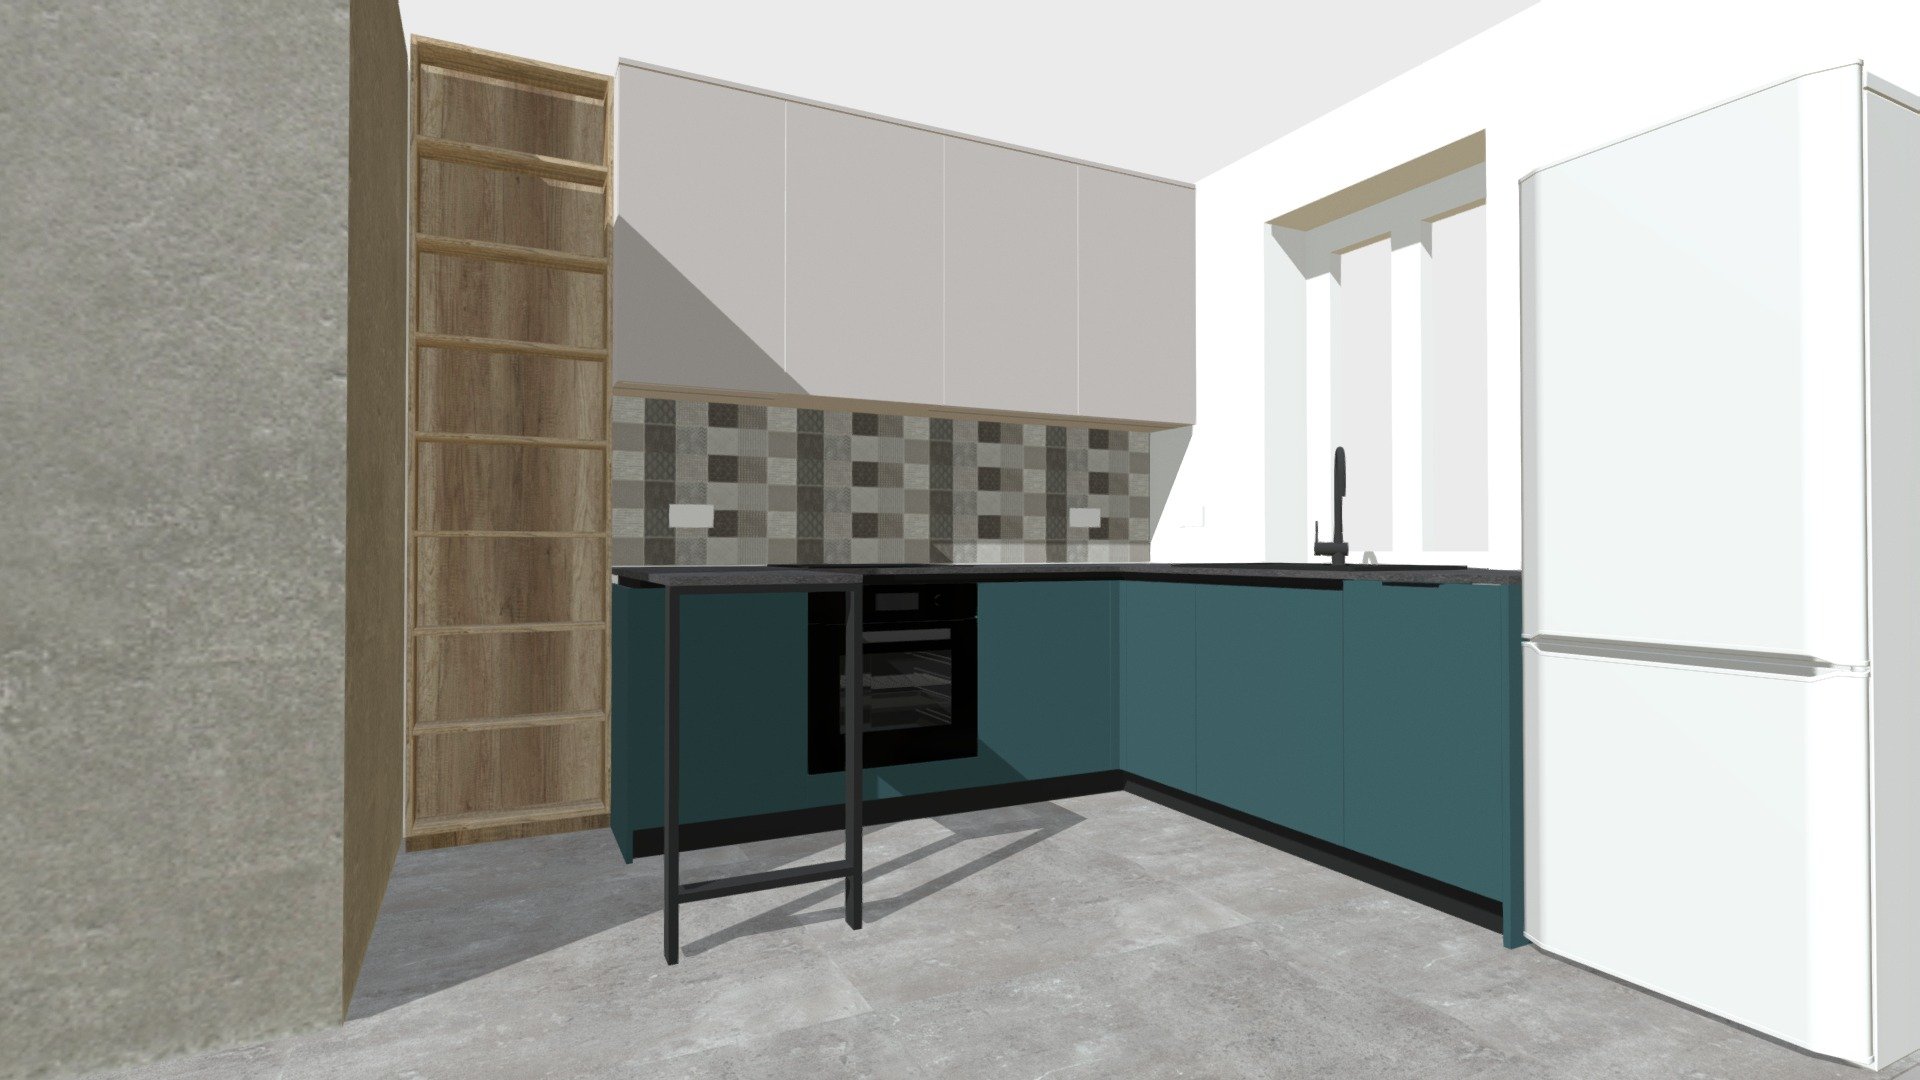 28345 - Download Free 3D model by Kitchen design (@kitchen_models ...